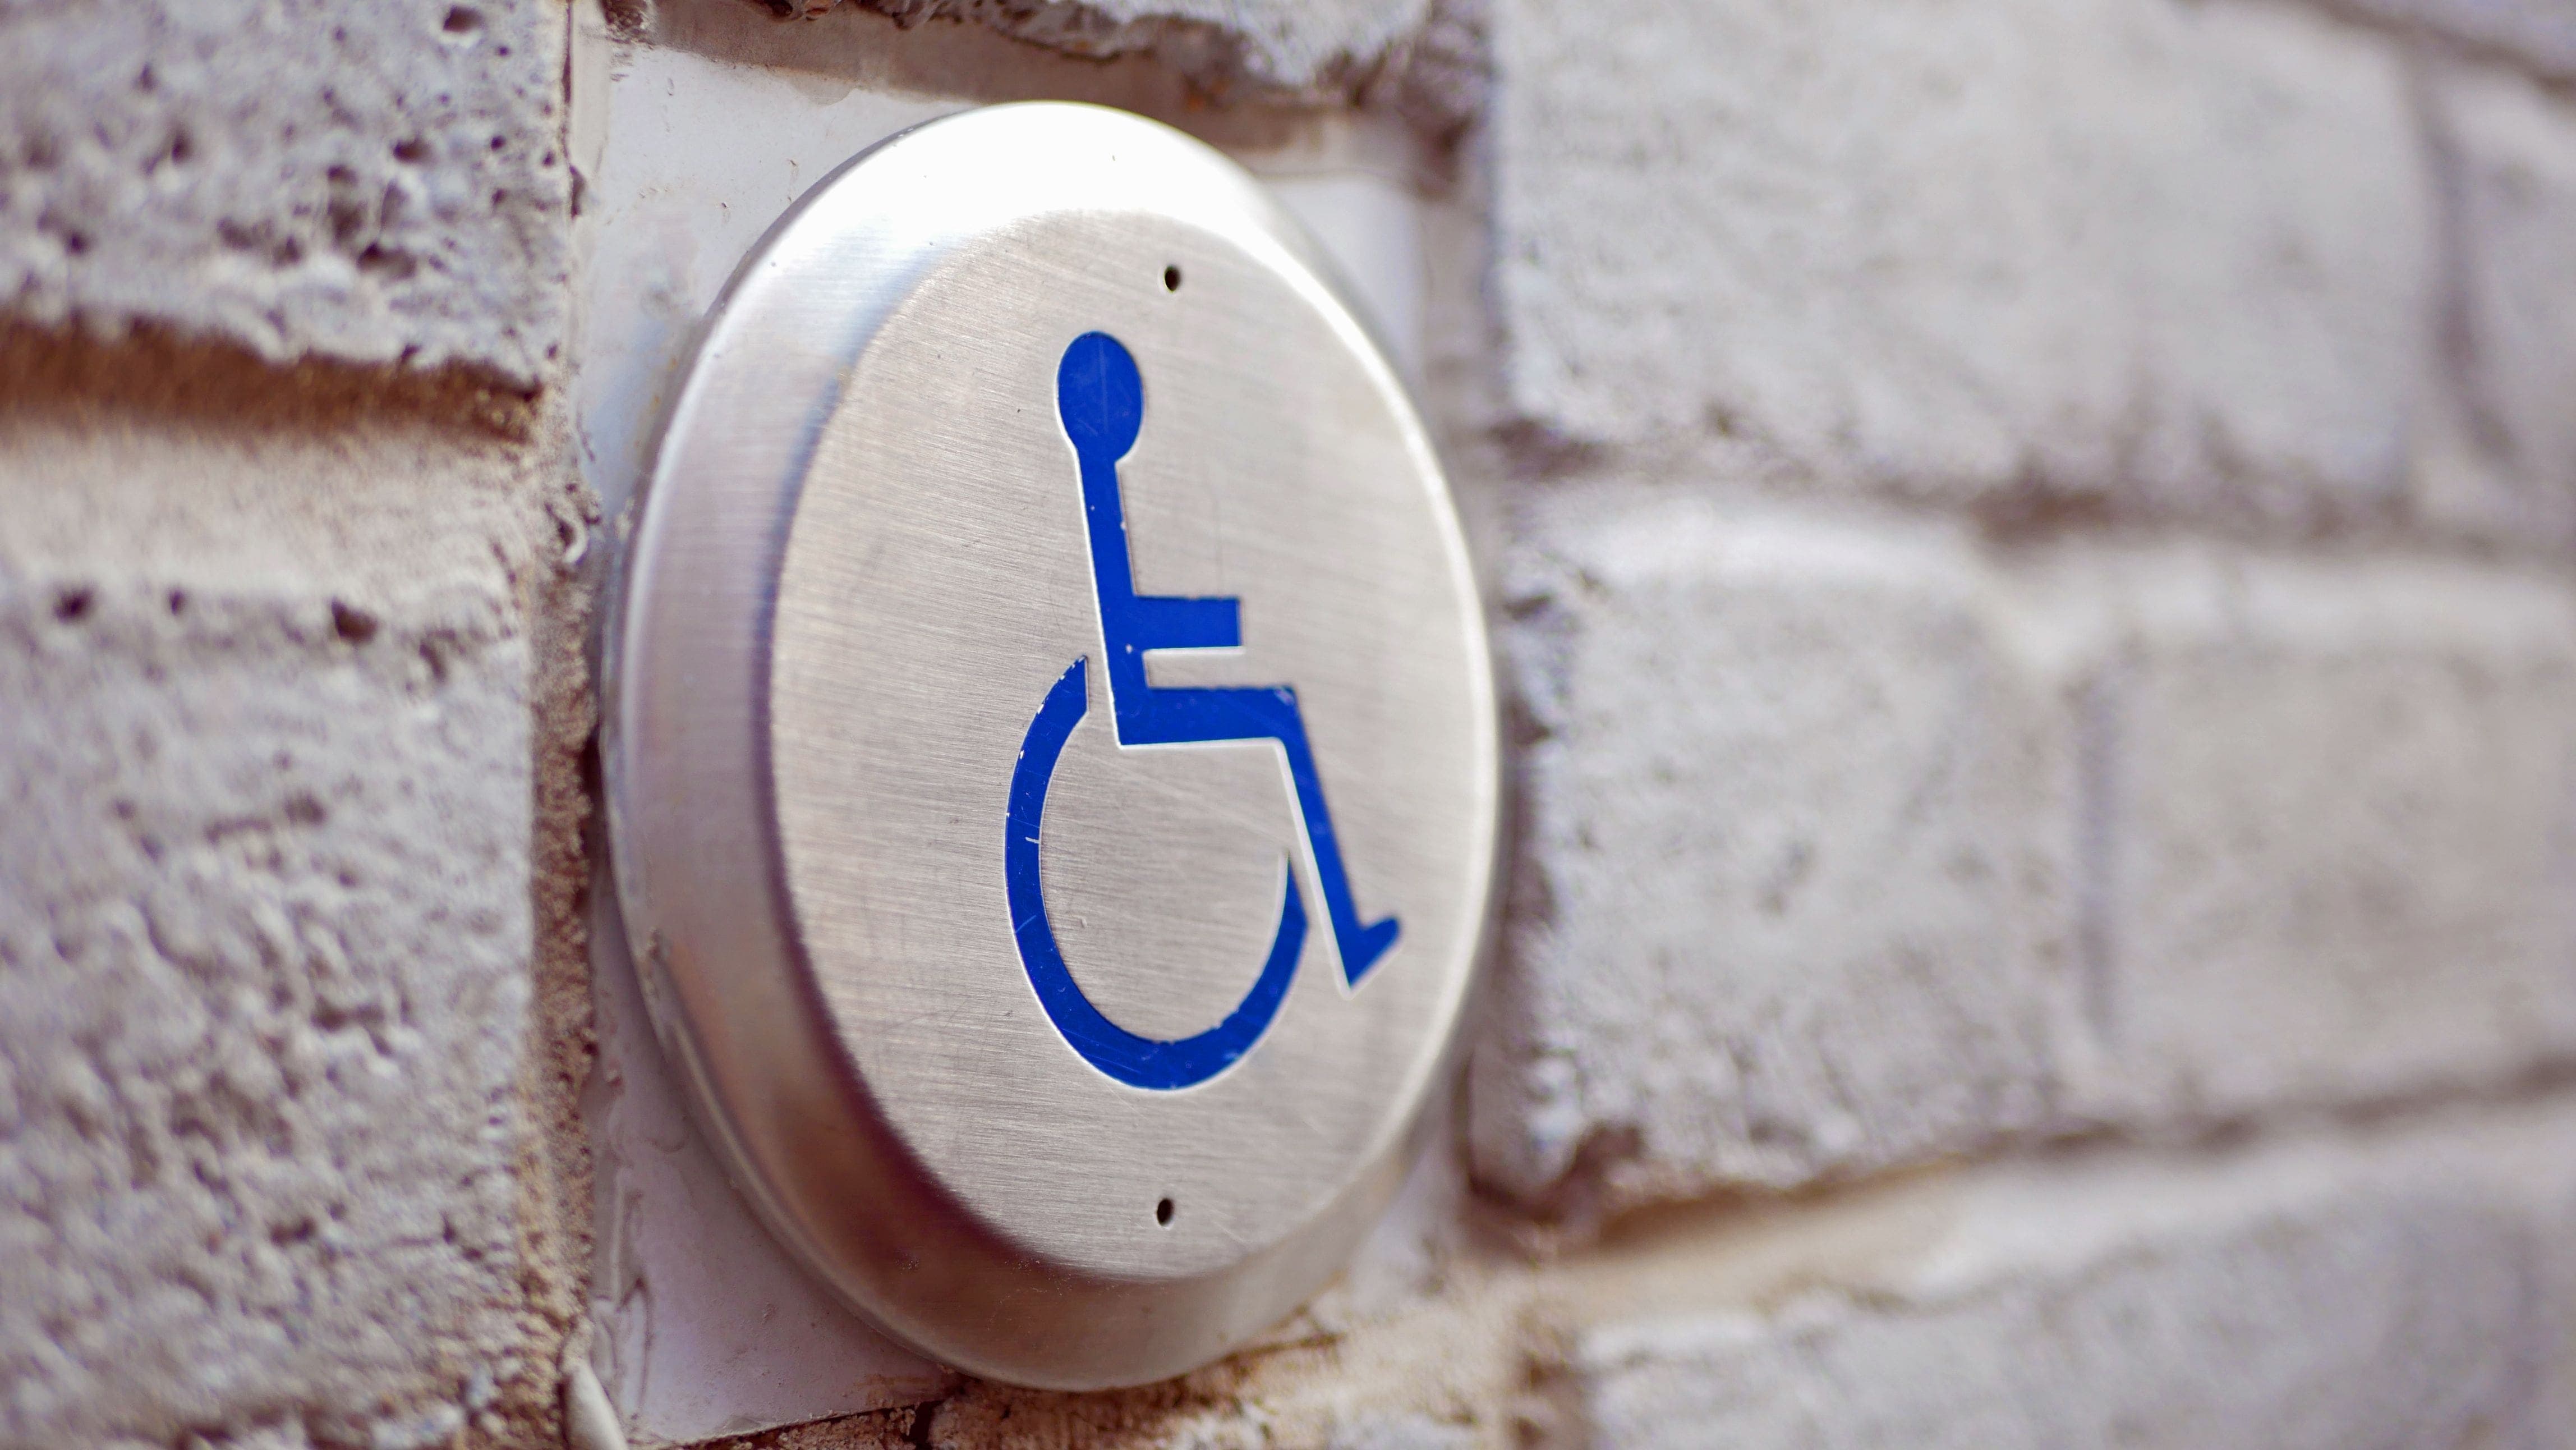 Wheelchair accessibility assistance button beside pedestrian door